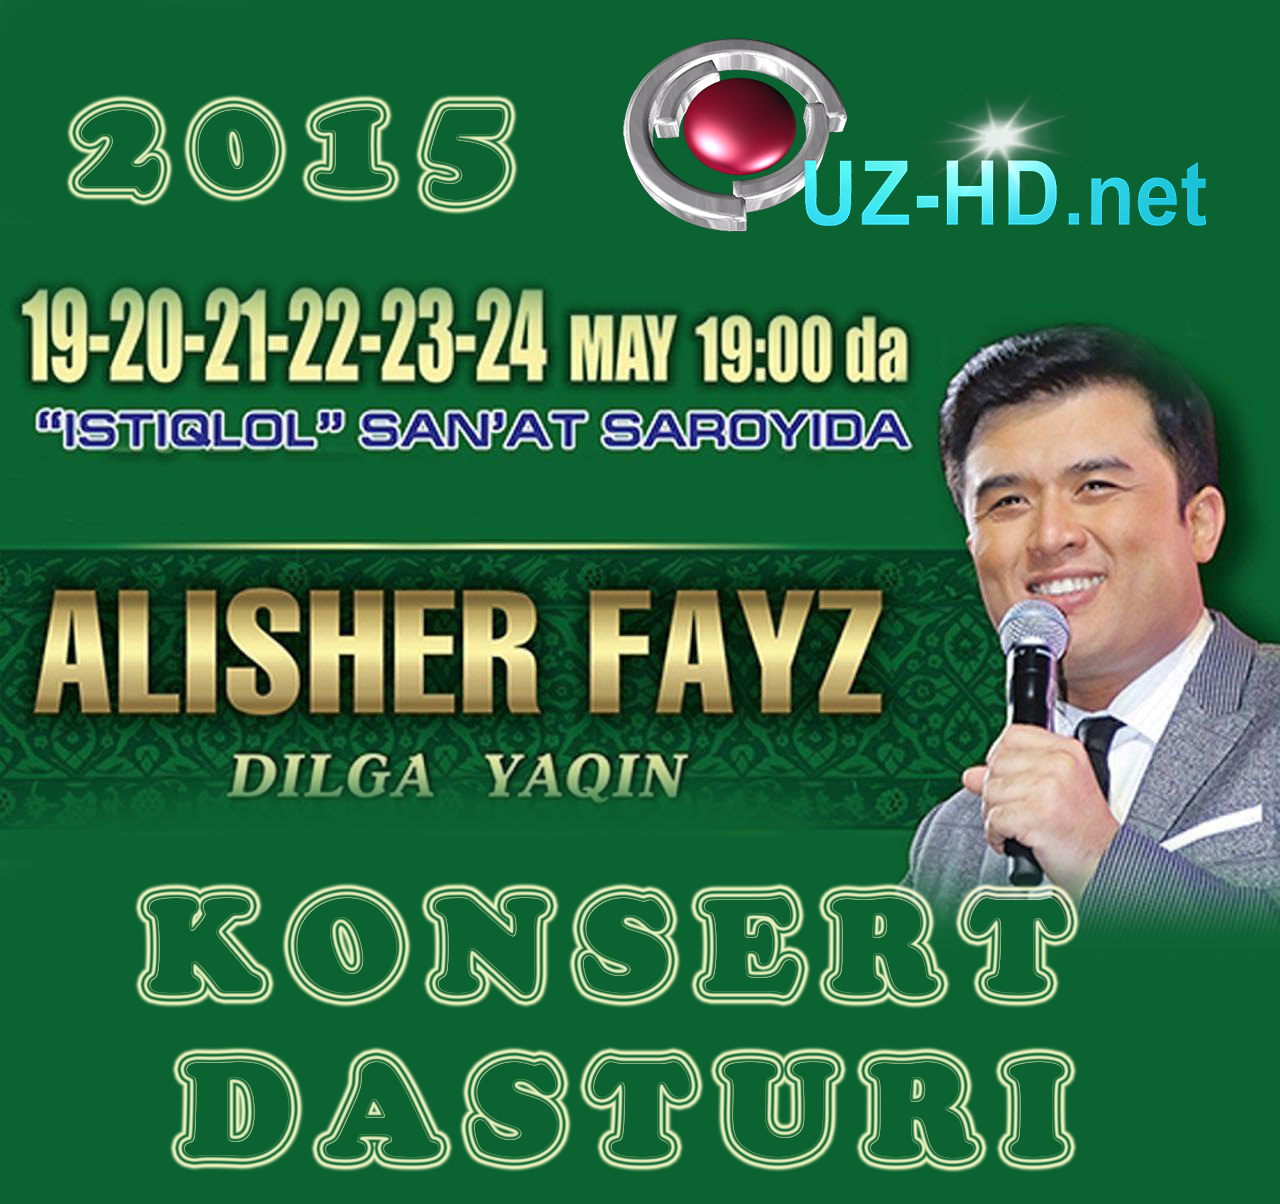 Alisher Fayz - Dilga yaqin nomli konsert dasturi (2015)